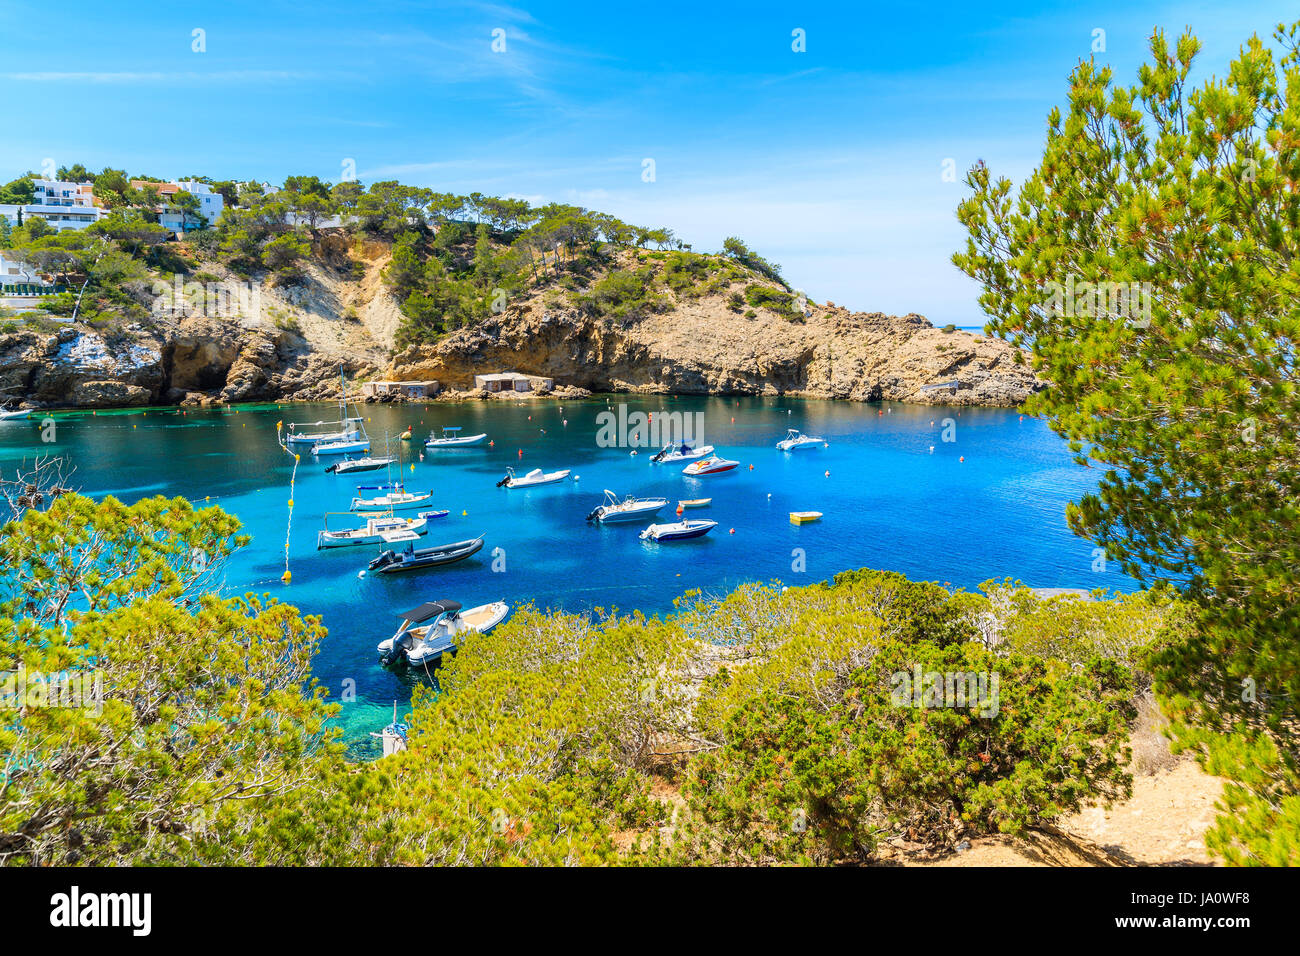 La pêche et la voile des bateaux sur la mer bleue de l'eau dans la baie de Cala Vadella, Ibiza island, Espagne Banque D'Images